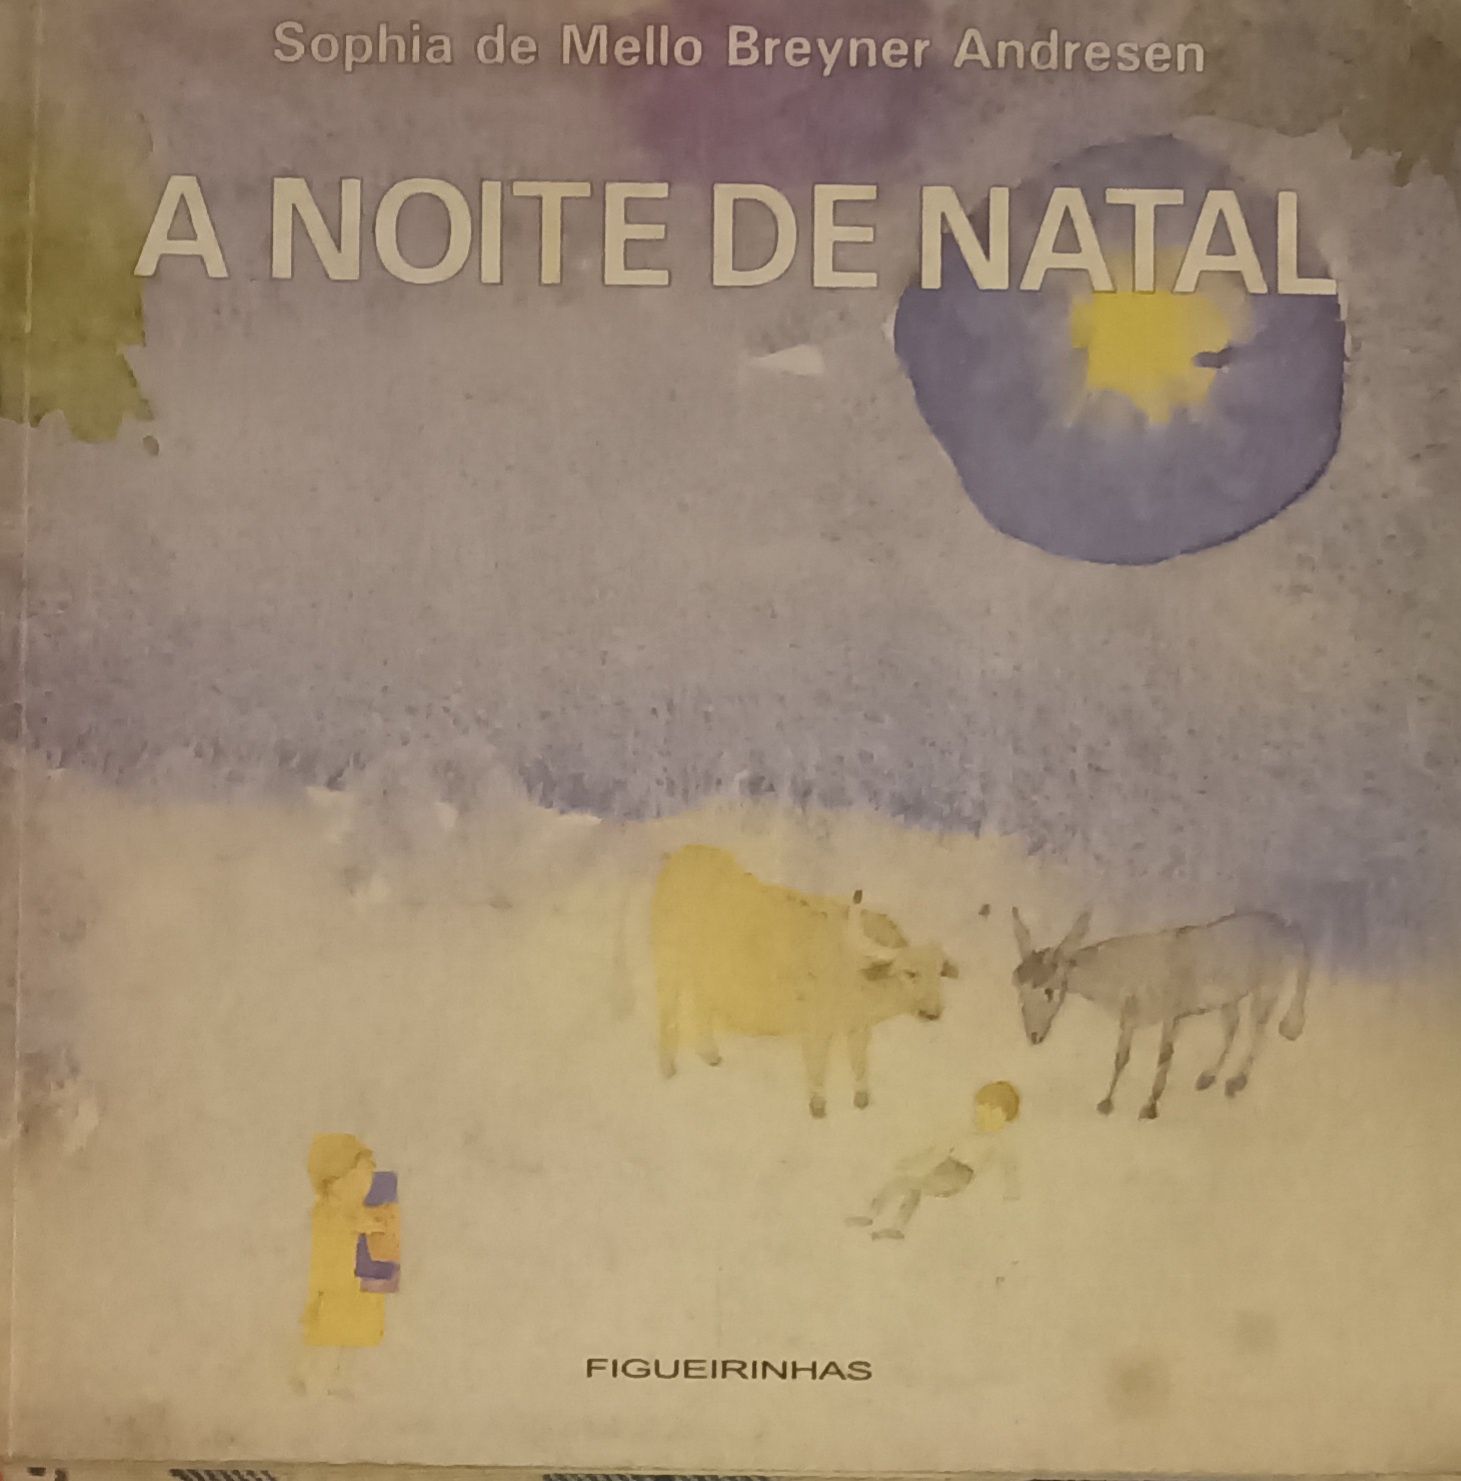 Livro "A noite de Natal" de Sophia de Mello Breyner Andresen